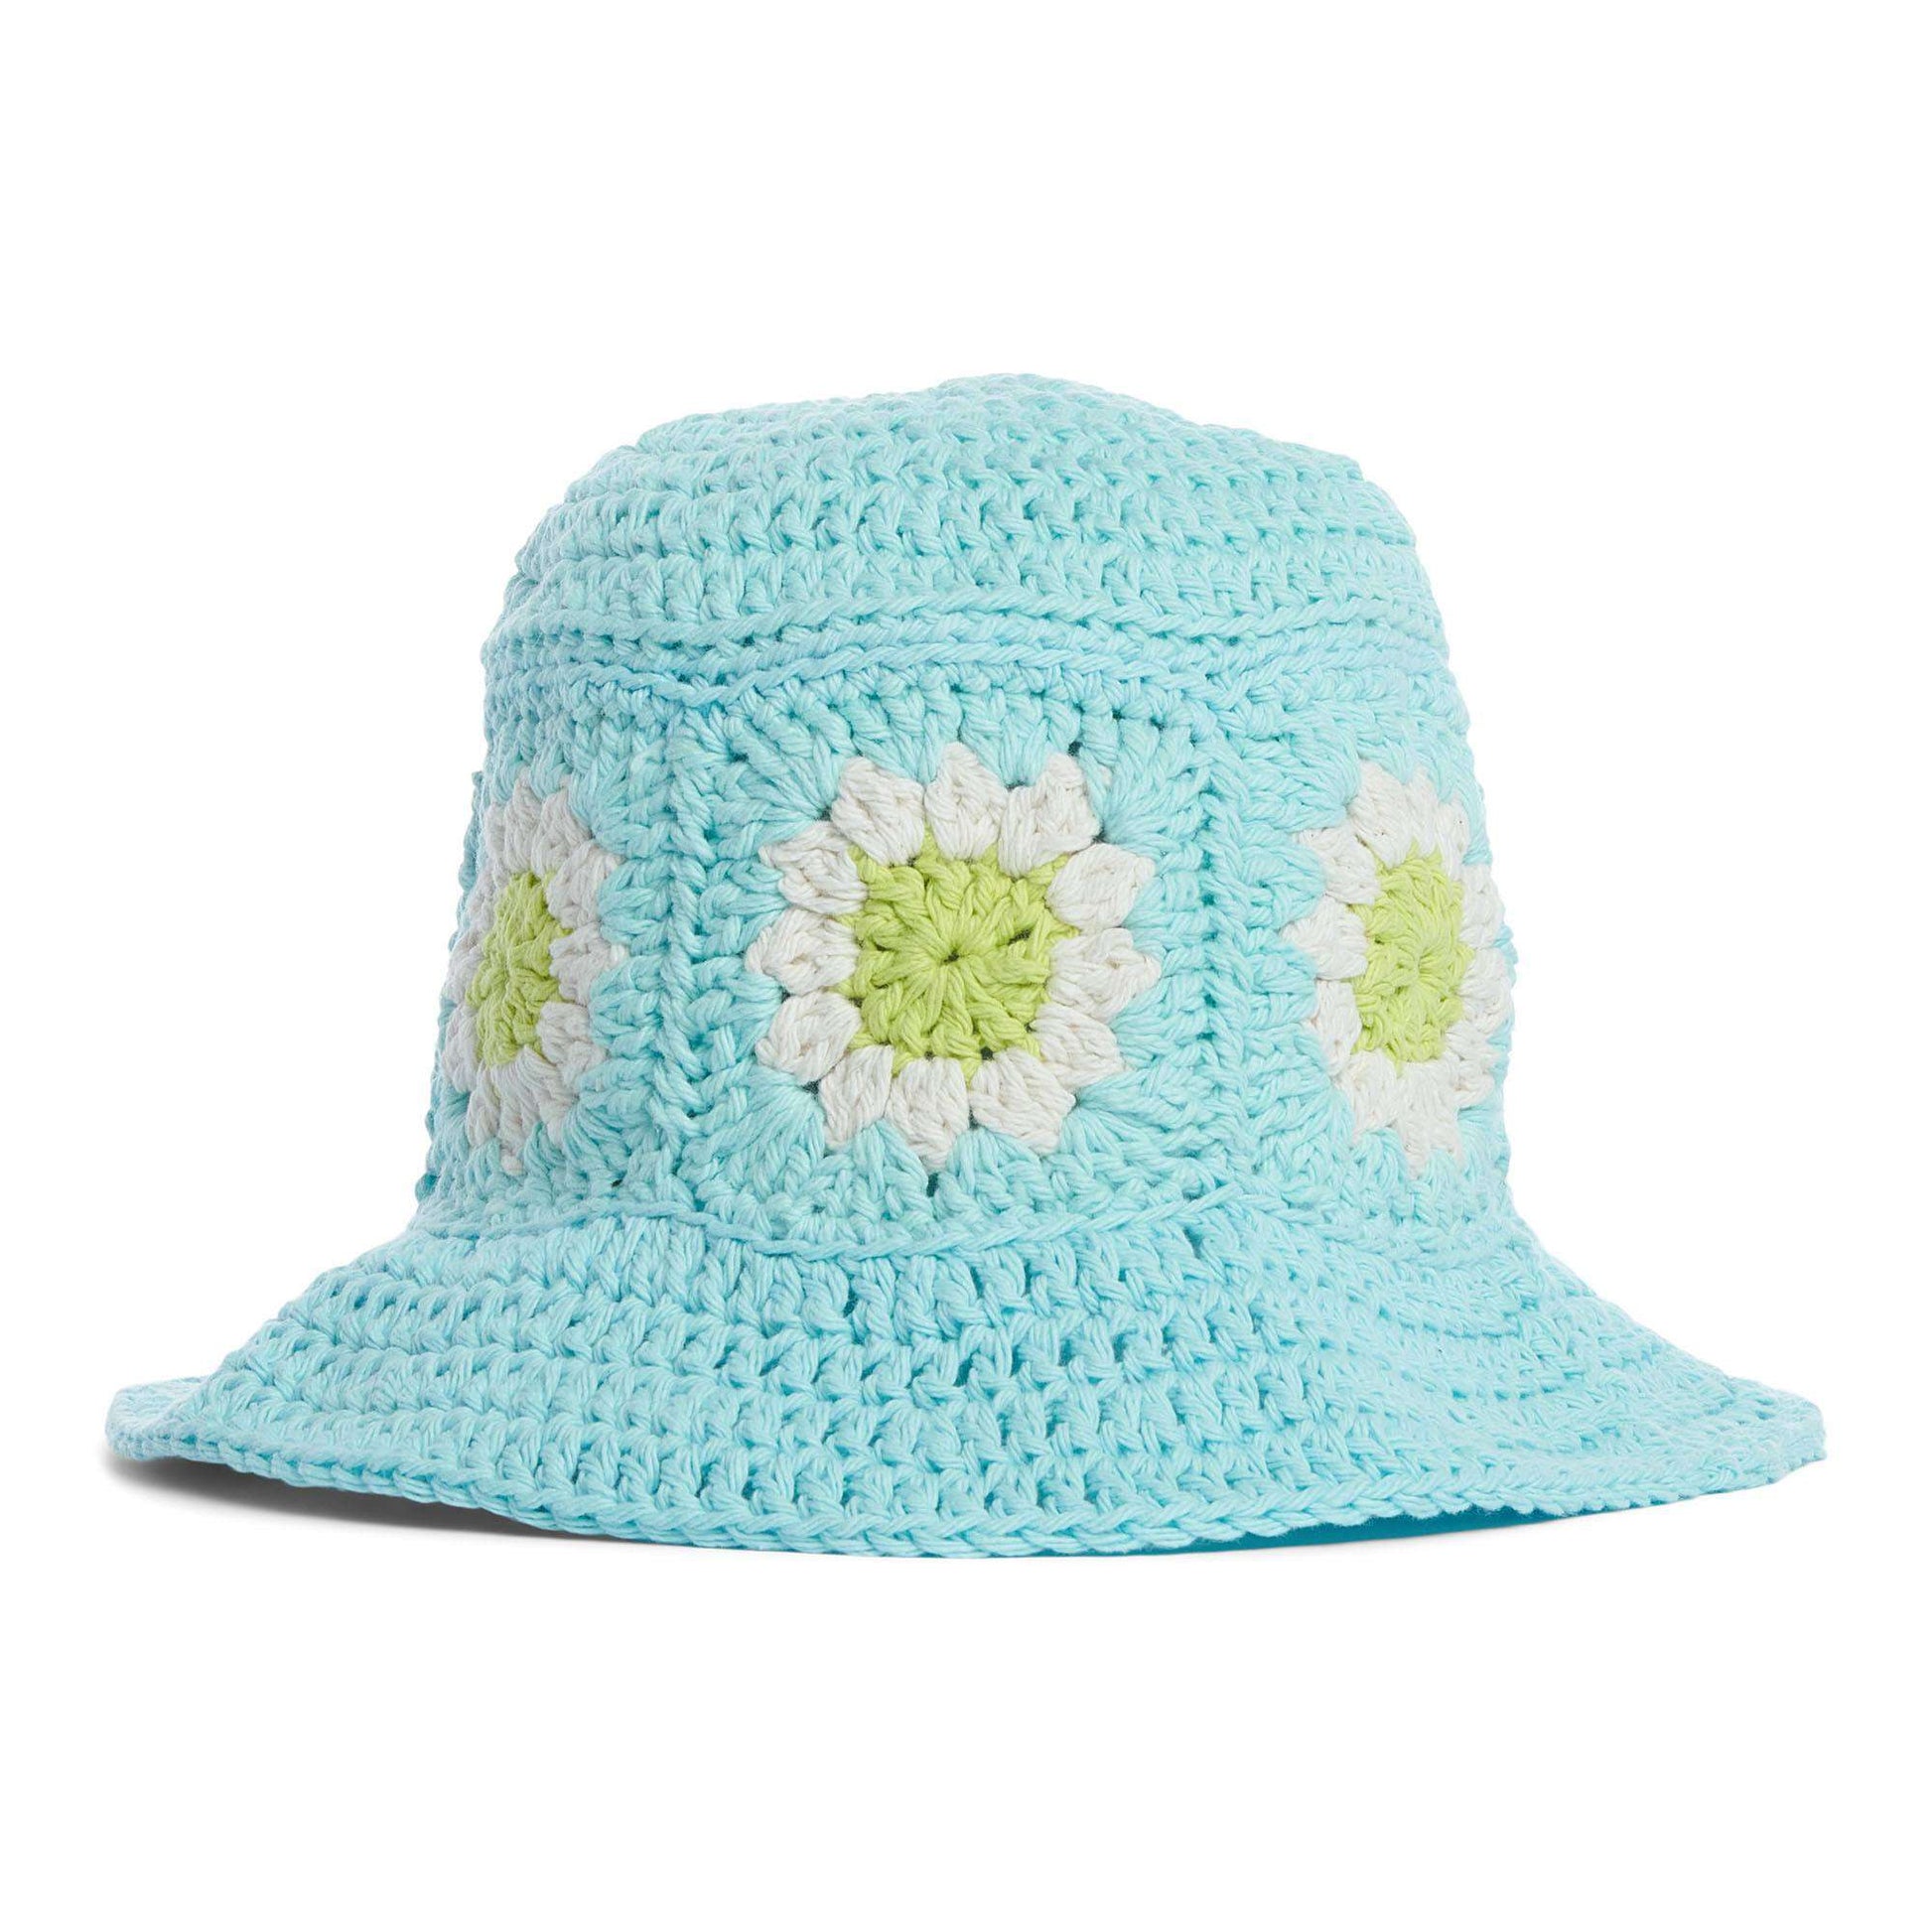 Free Lily Flower Power Bucket Hat Crochet Pattern